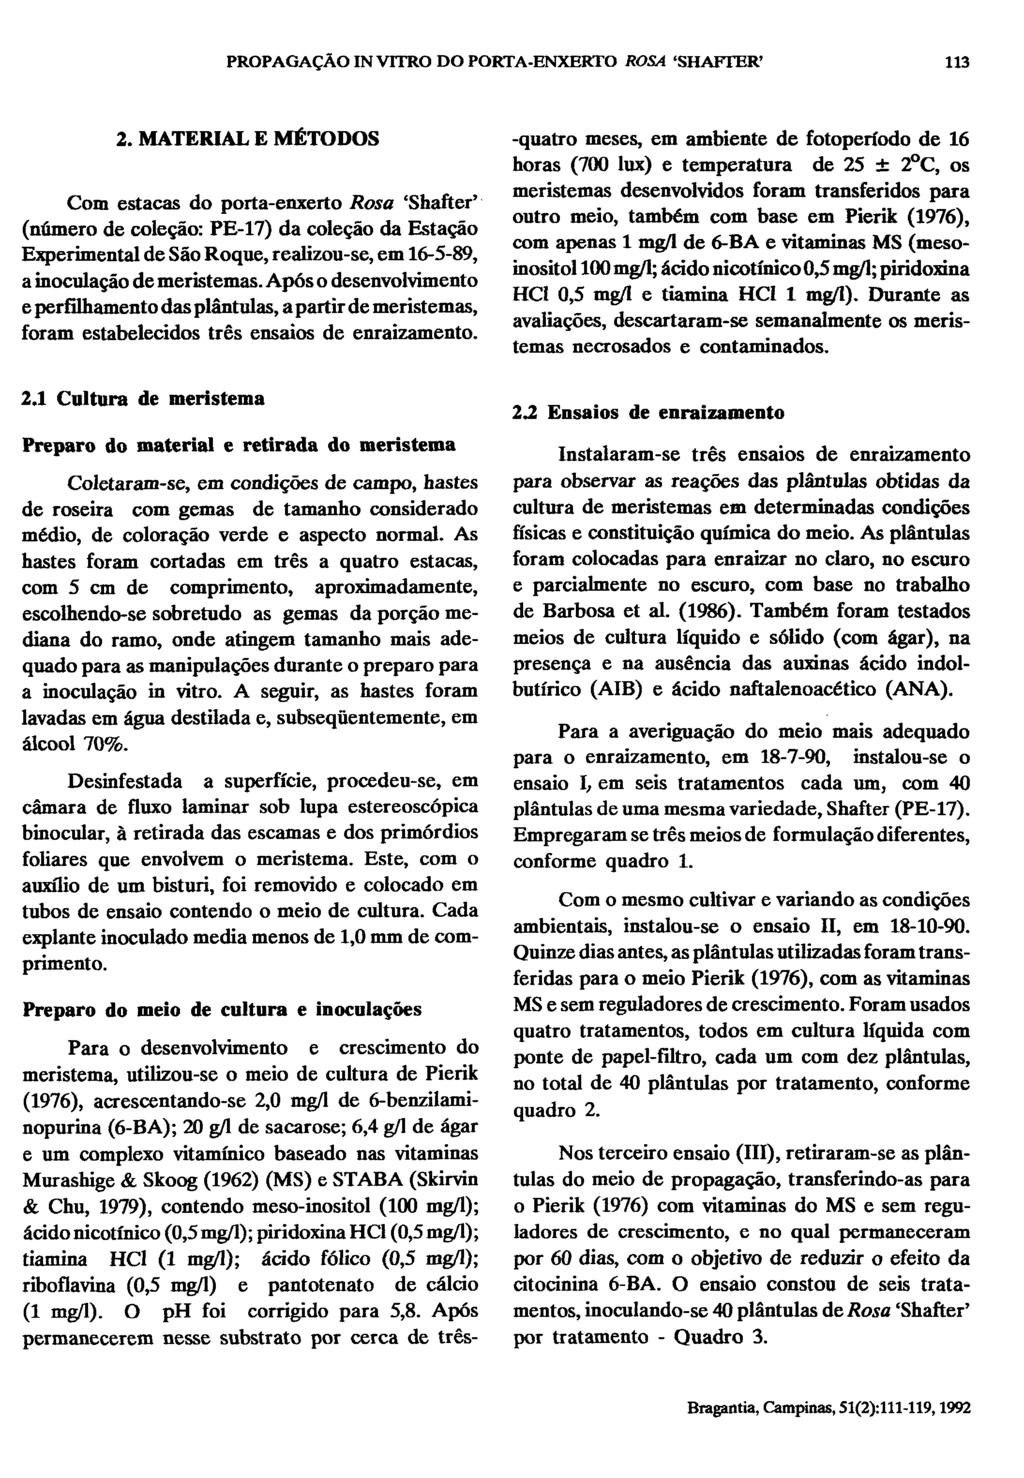 2. MATERIAL E MÉTODOS Com estacas do porta-enxerto Rosa 'Shafter' (número de coleção: PE-17) da coleção da Estação Experimental de São Roque, realizou-se, em 16-5-89, a inoculação de meristemas.